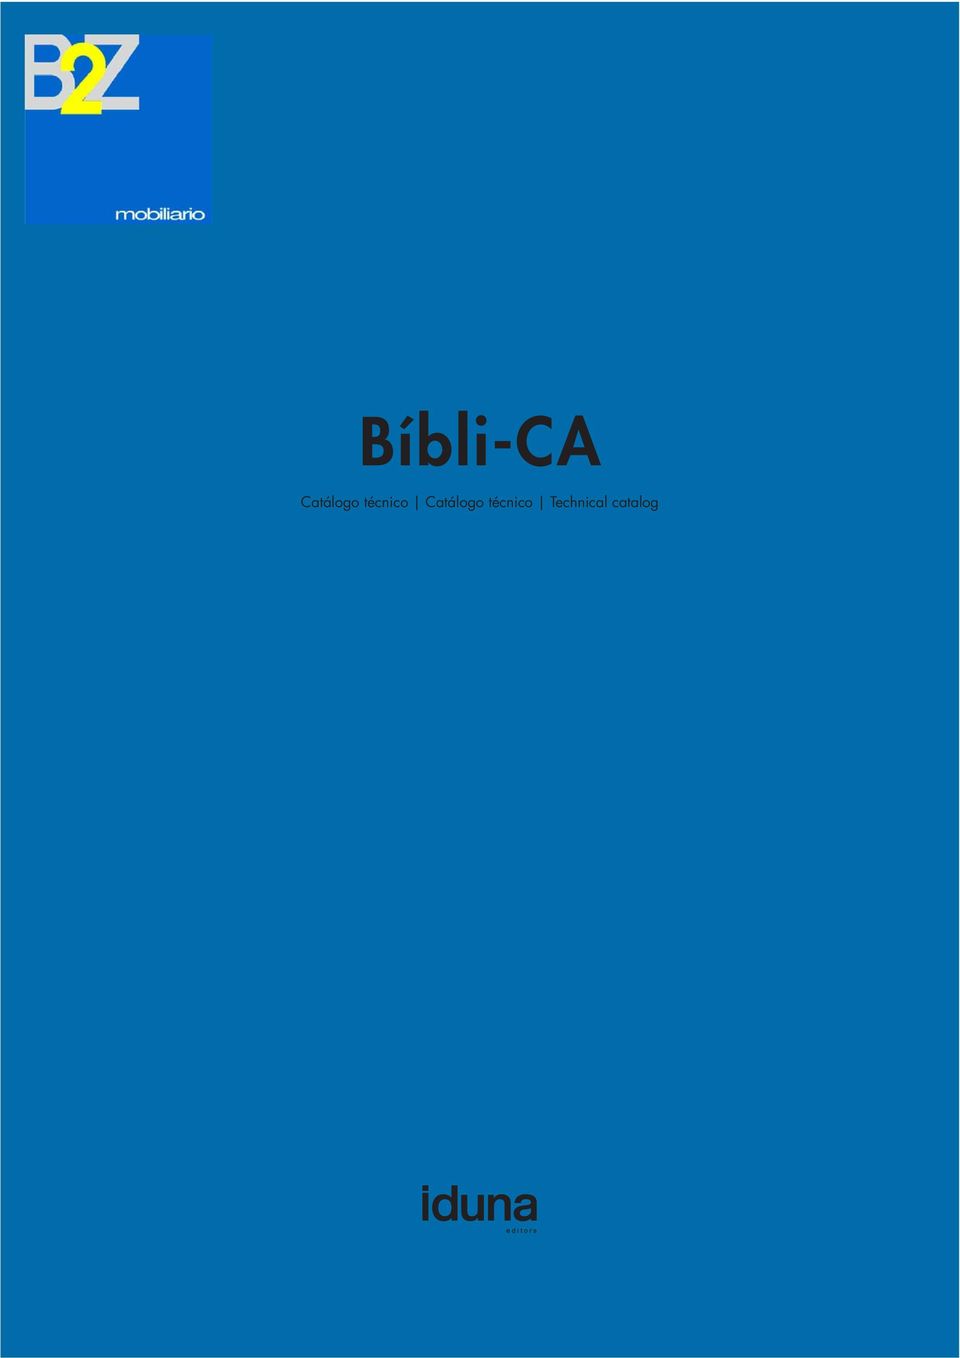 1 Bíbli-CA Catálogo técnico